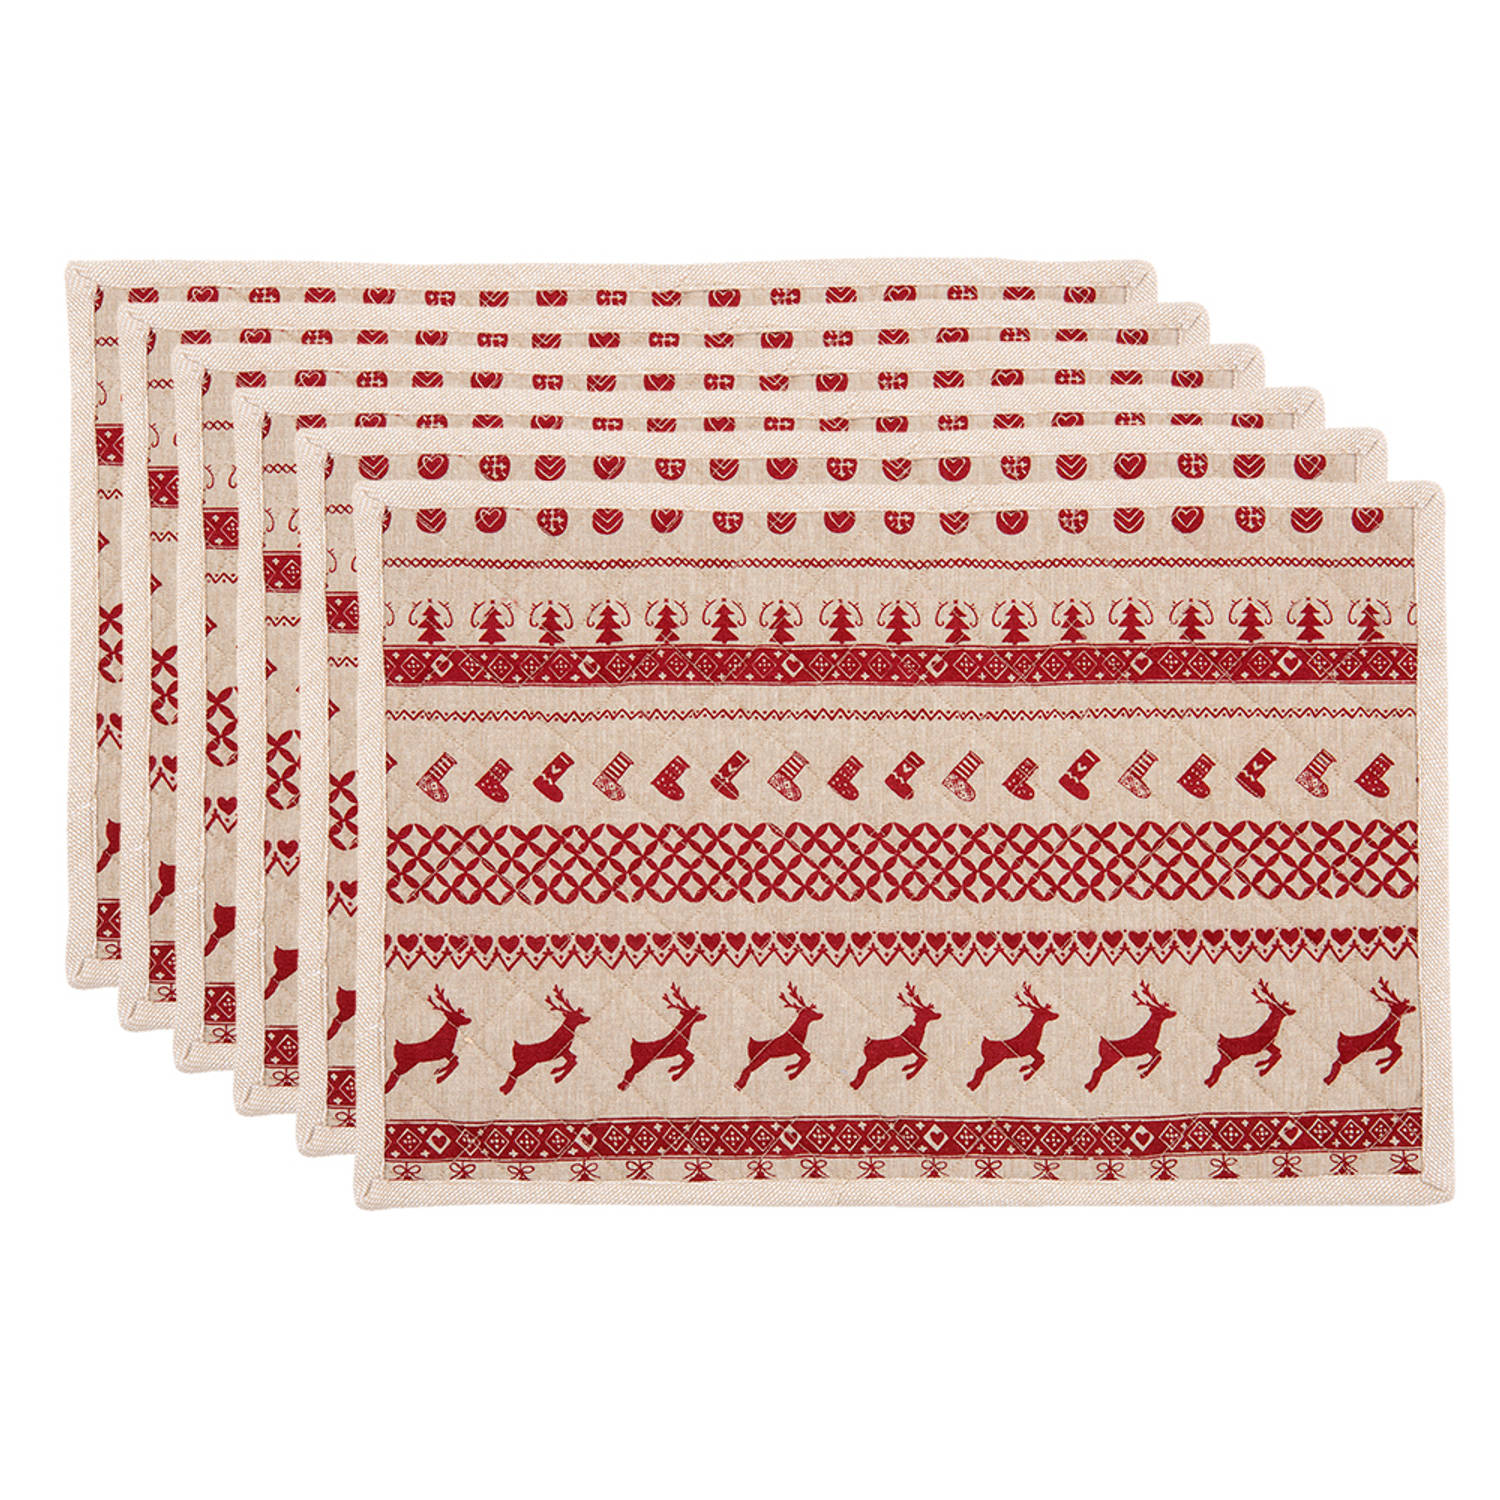 HAES DECO - Set van 6 Placemats - formaat 48x33 cm - kleuren Rood / Beige - van 100% Katoen - Collectie: Nordic Christmas - Kerst Placemats